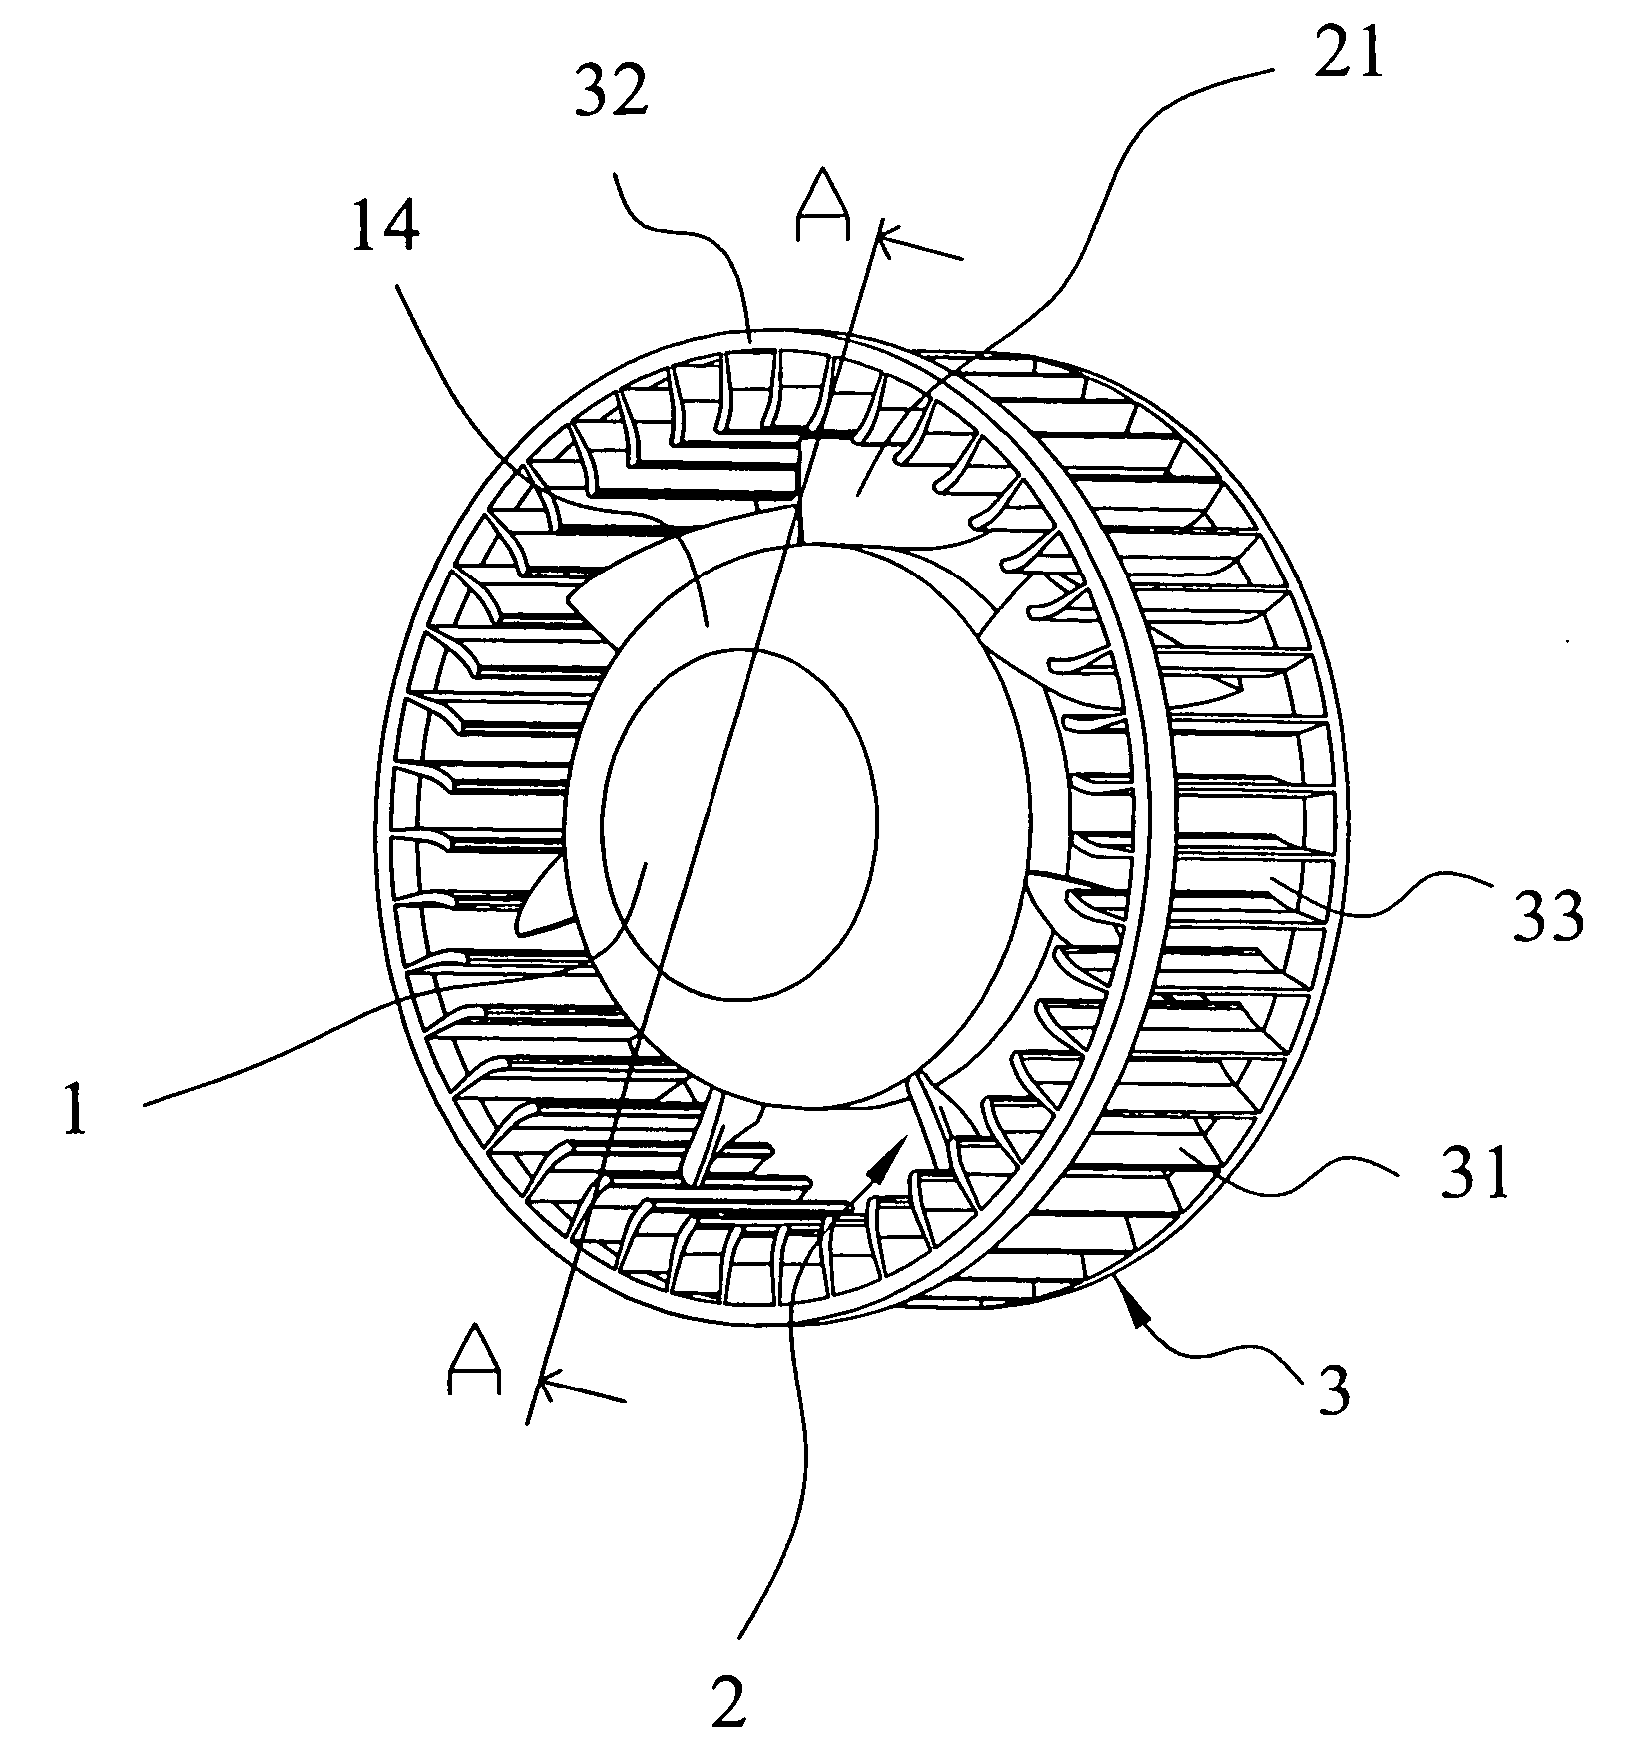 Radial fan having axial fan blade configuration